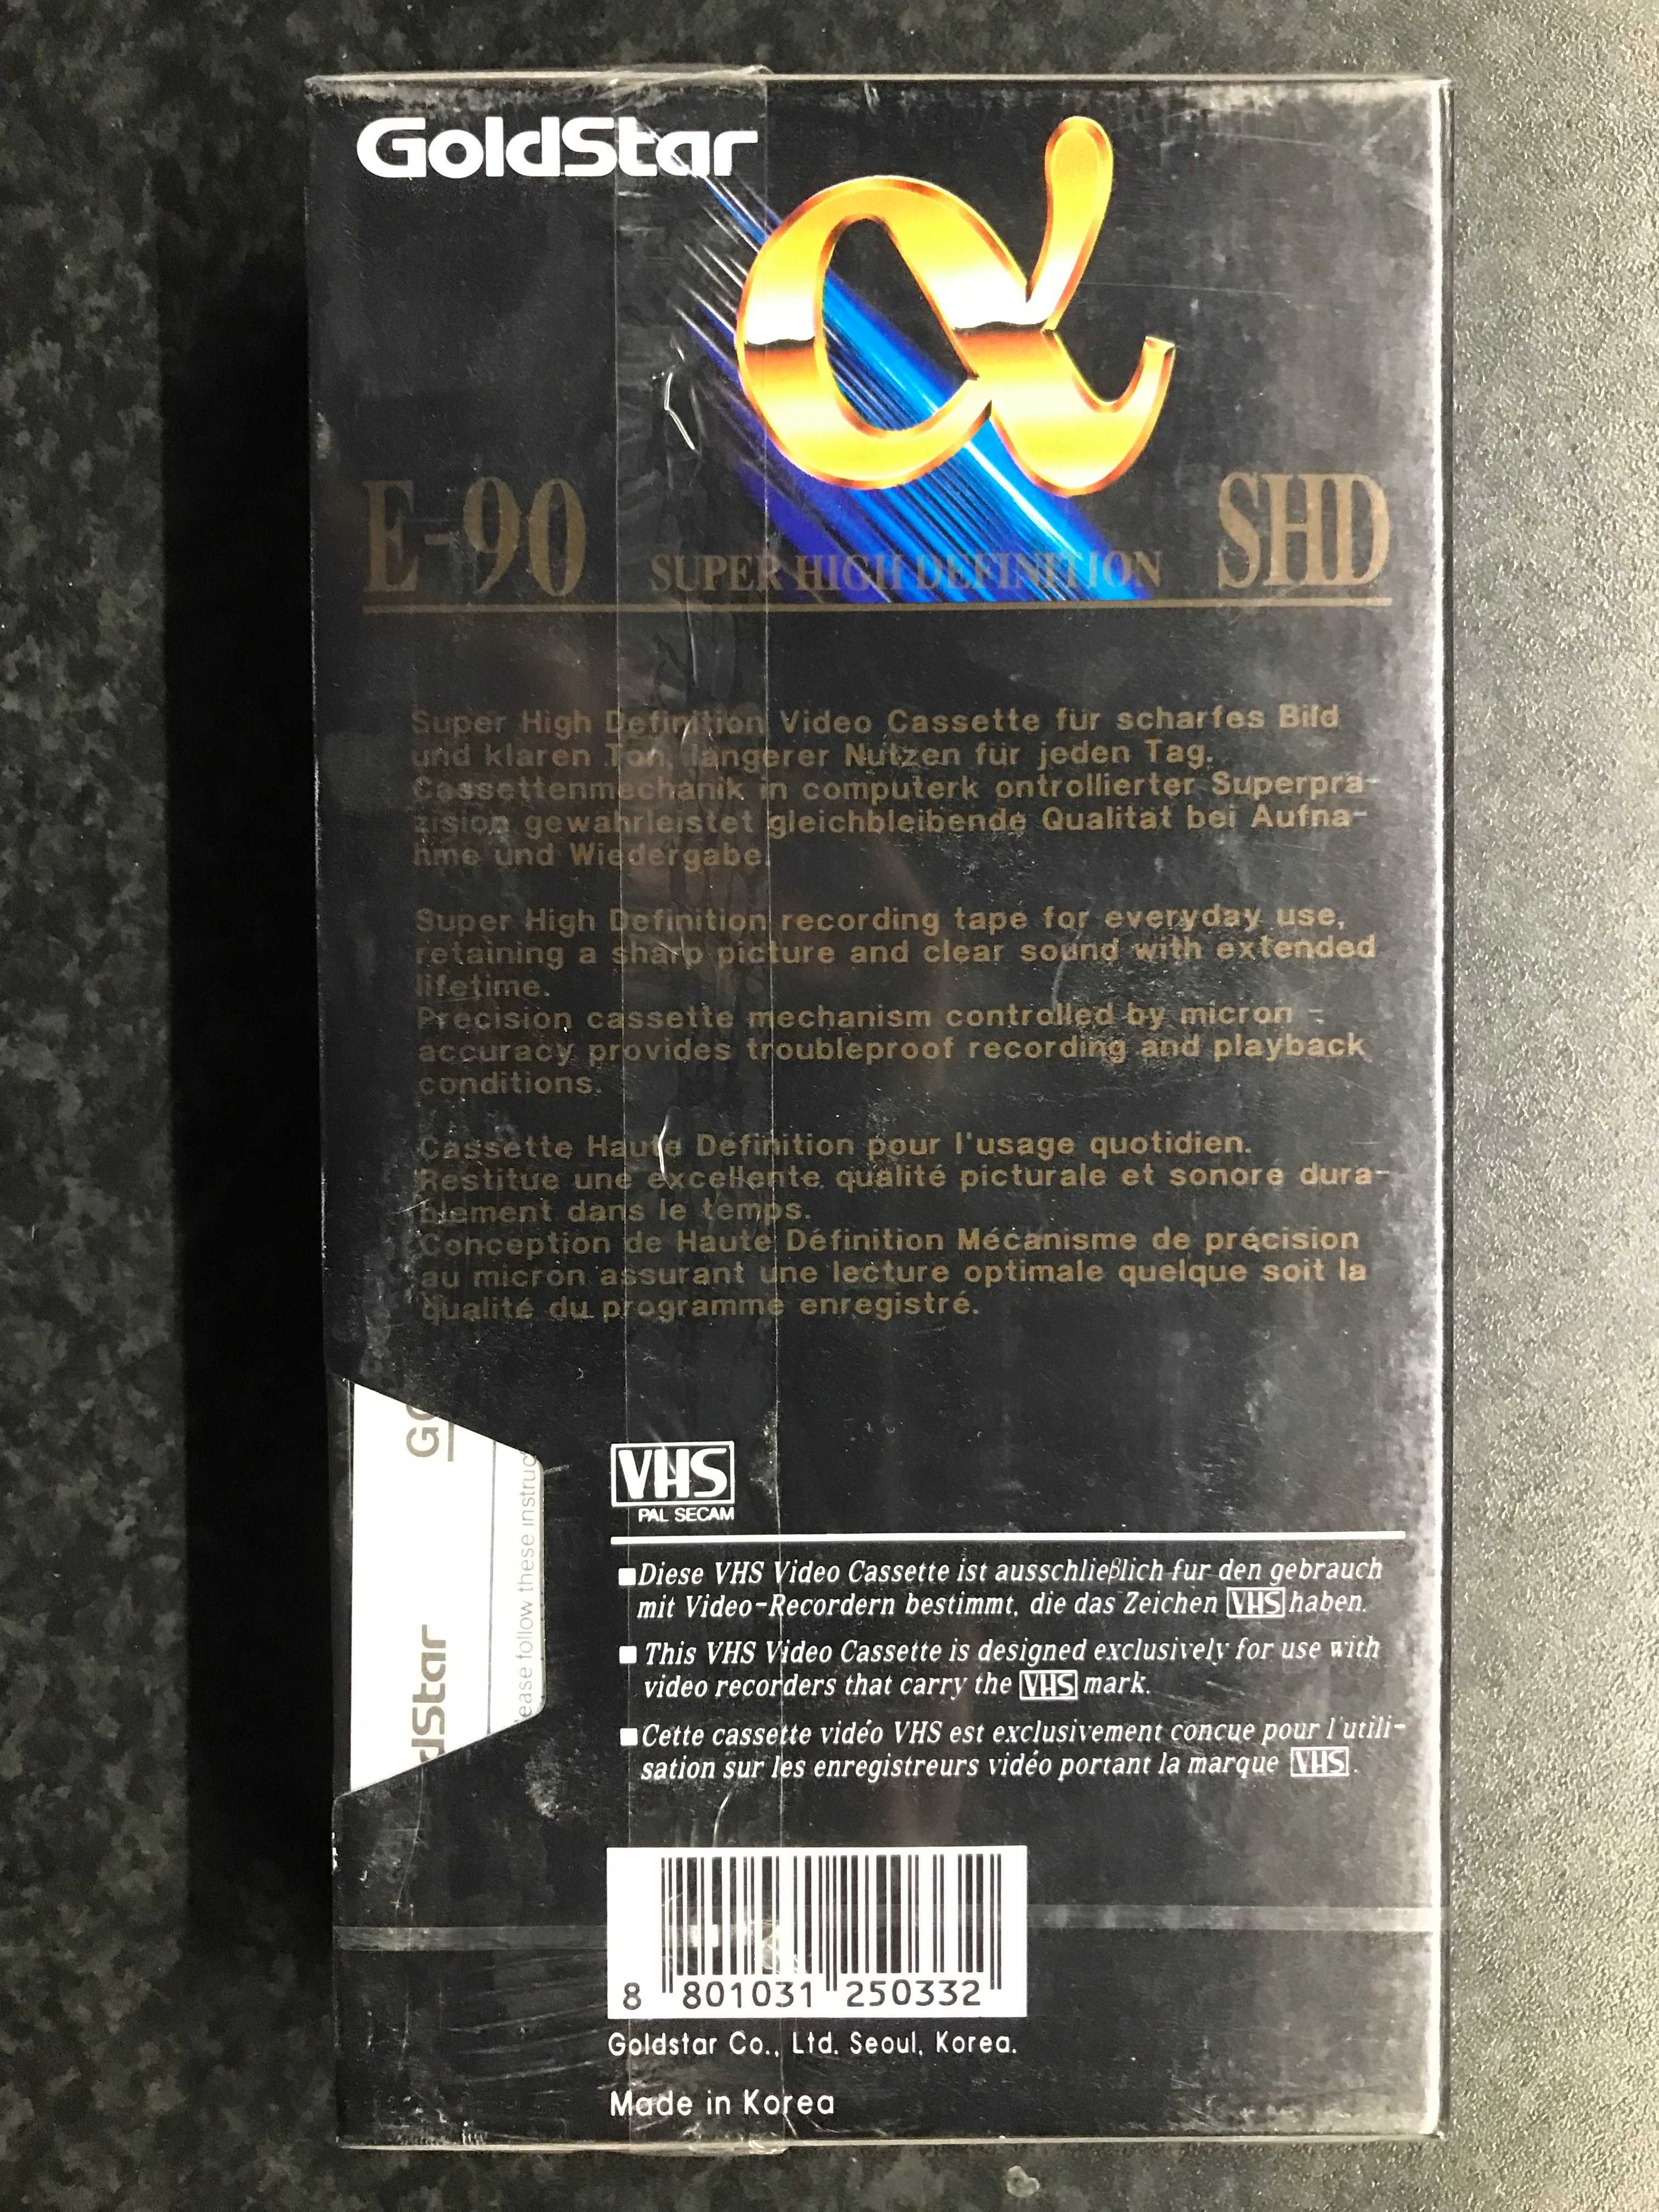 Kaseta VHS LG E  90